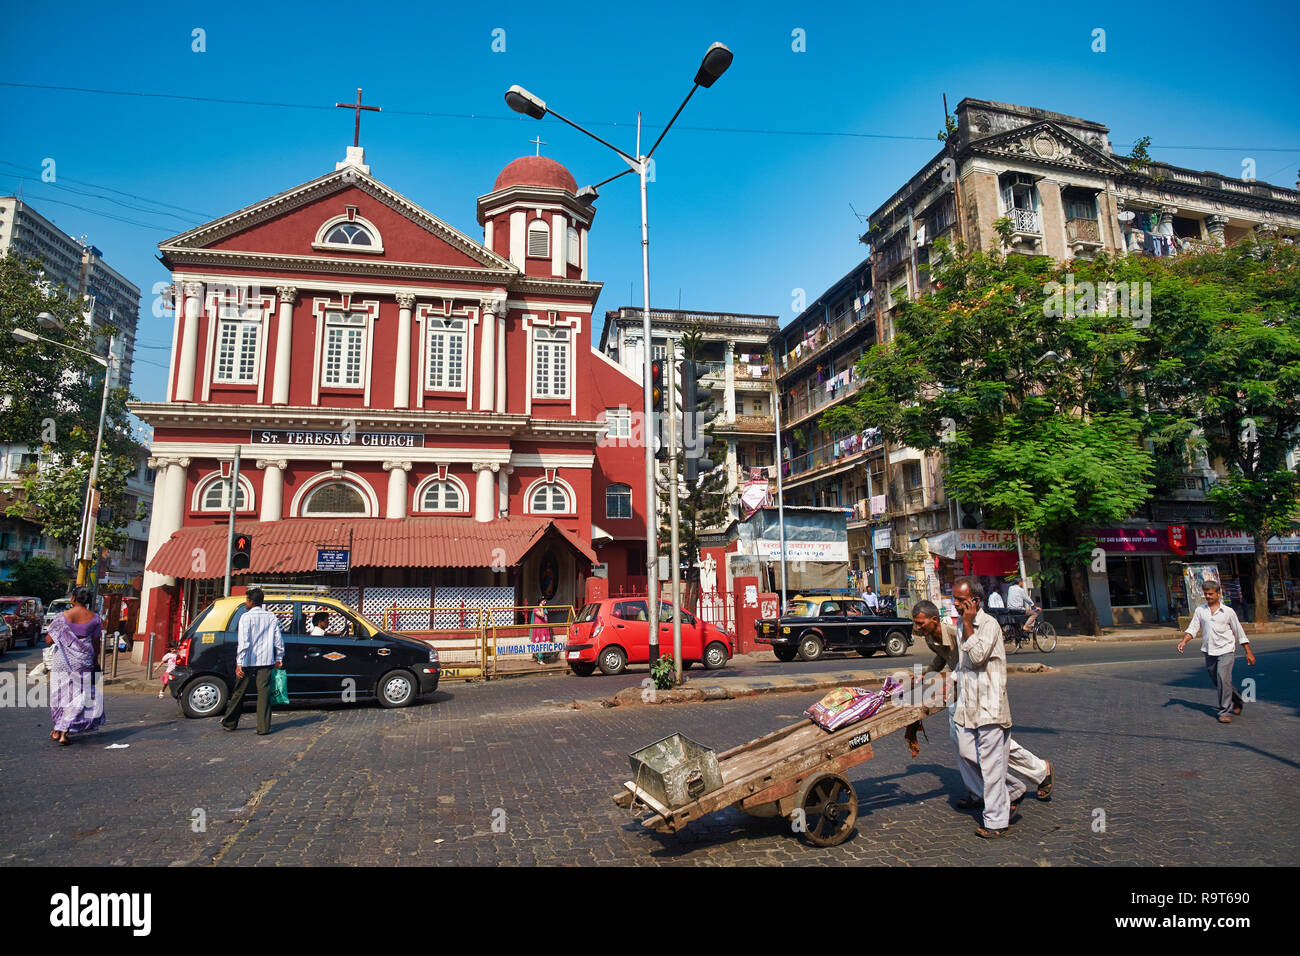 L'église catholique rouge de Sainte-Thérèse, parfois appelée église portugaise, à Charni Road, Girgaum (Girgaon), Mumbai, Inde Banque D'Images